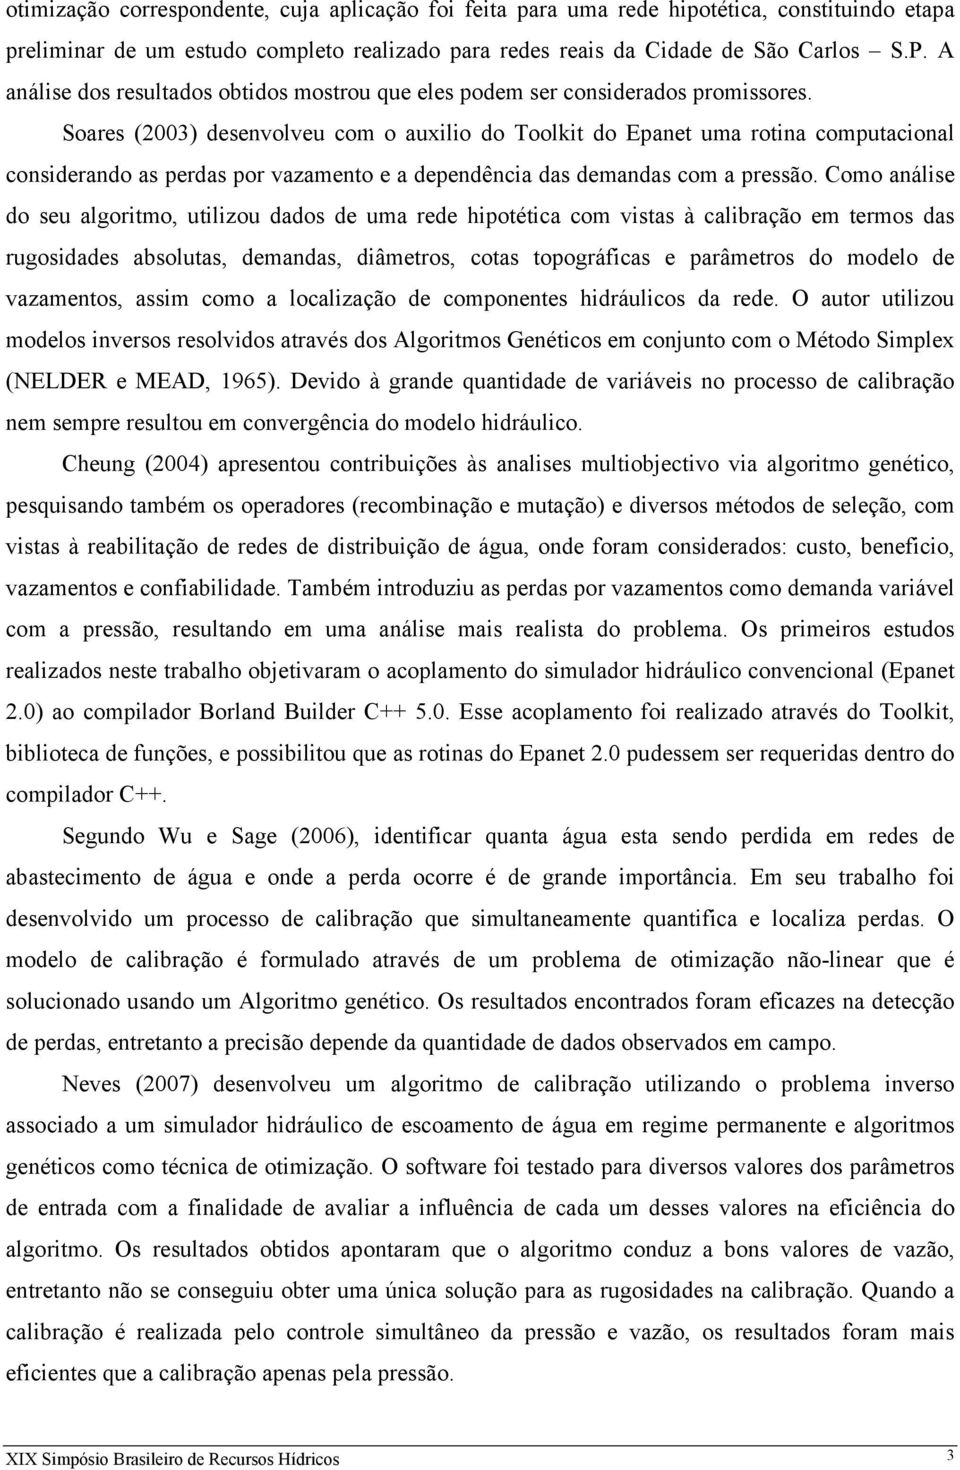 Soares (2003) desenvolveu com o auxilio do Toolkit do Epanet uma rotina computacional considerando as perdas por vazamento e a dependência das demandas com a pressão.